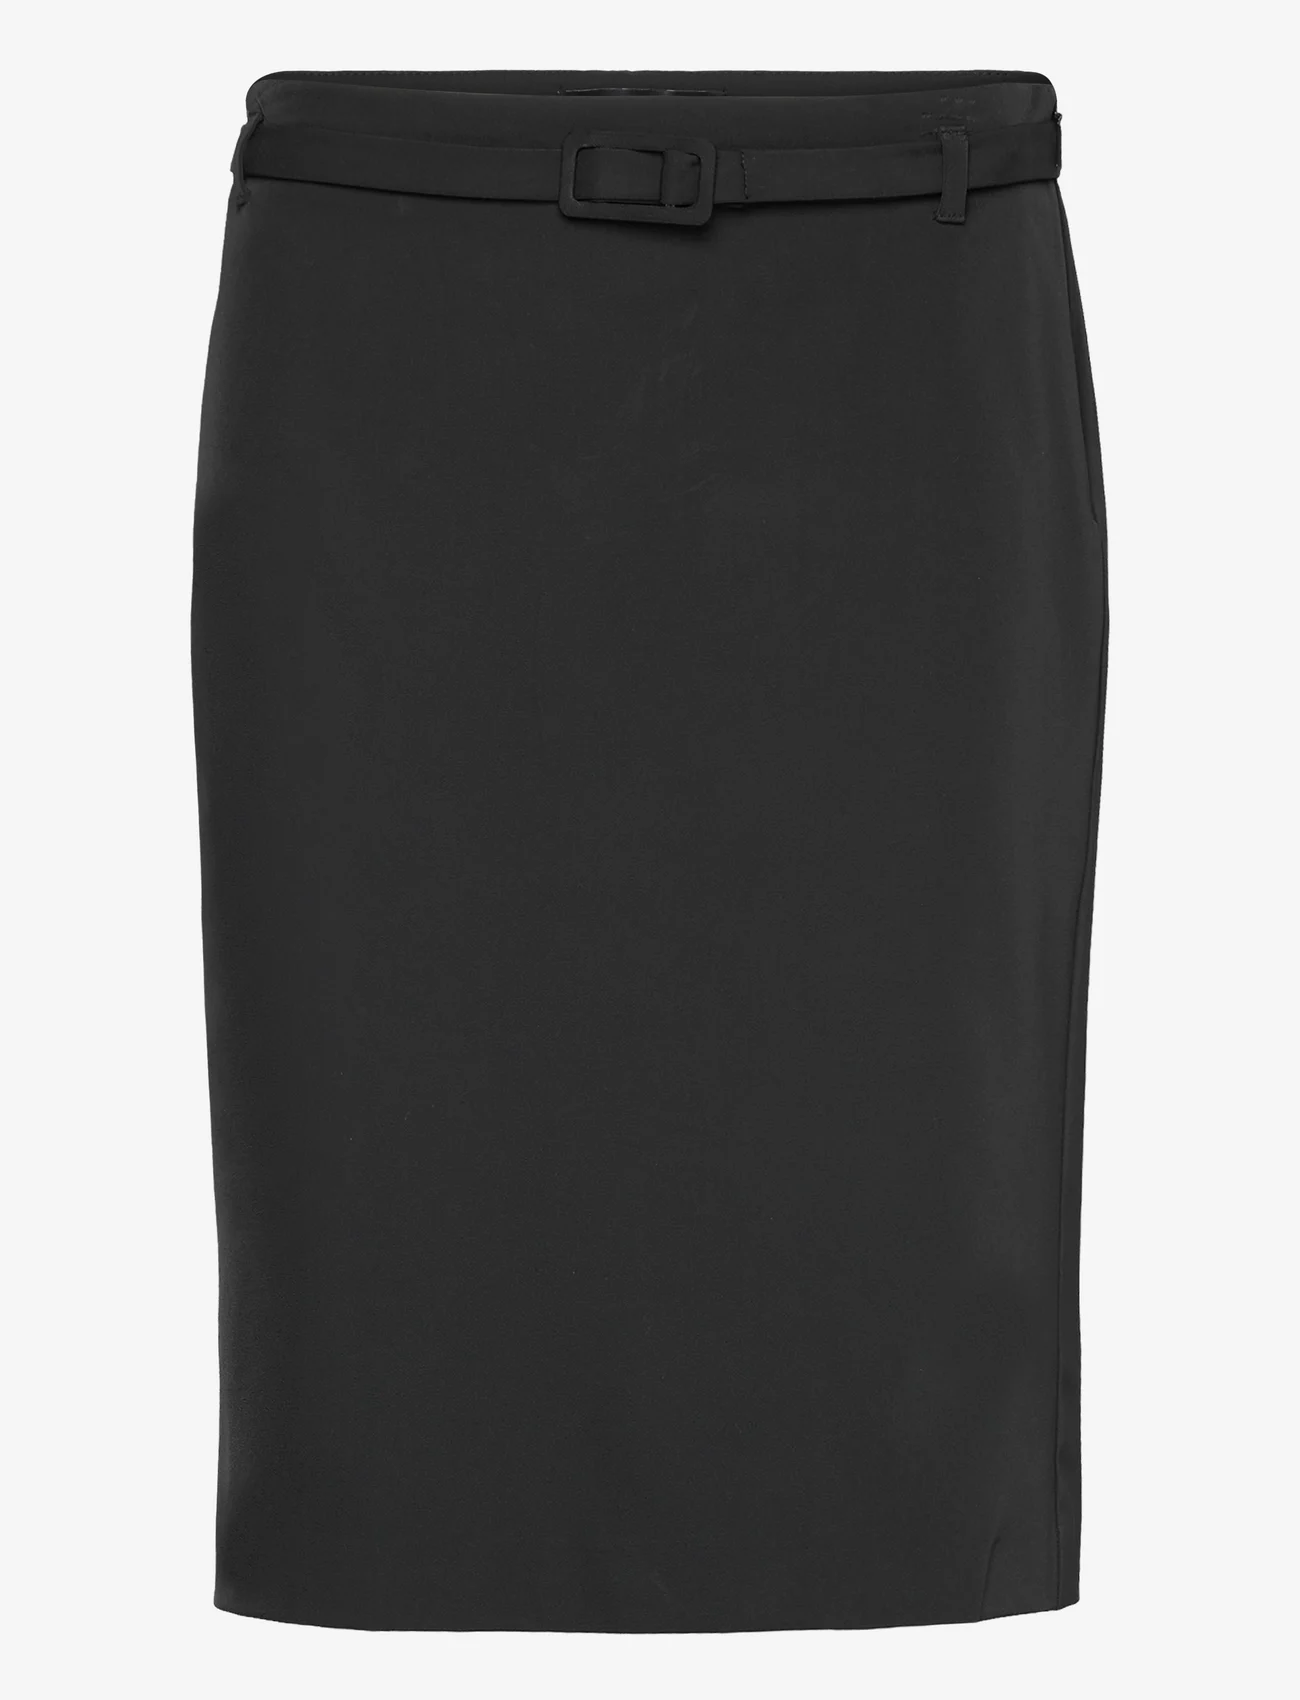 Mango - Pencil belt skirt - midi nederdele - black - 0